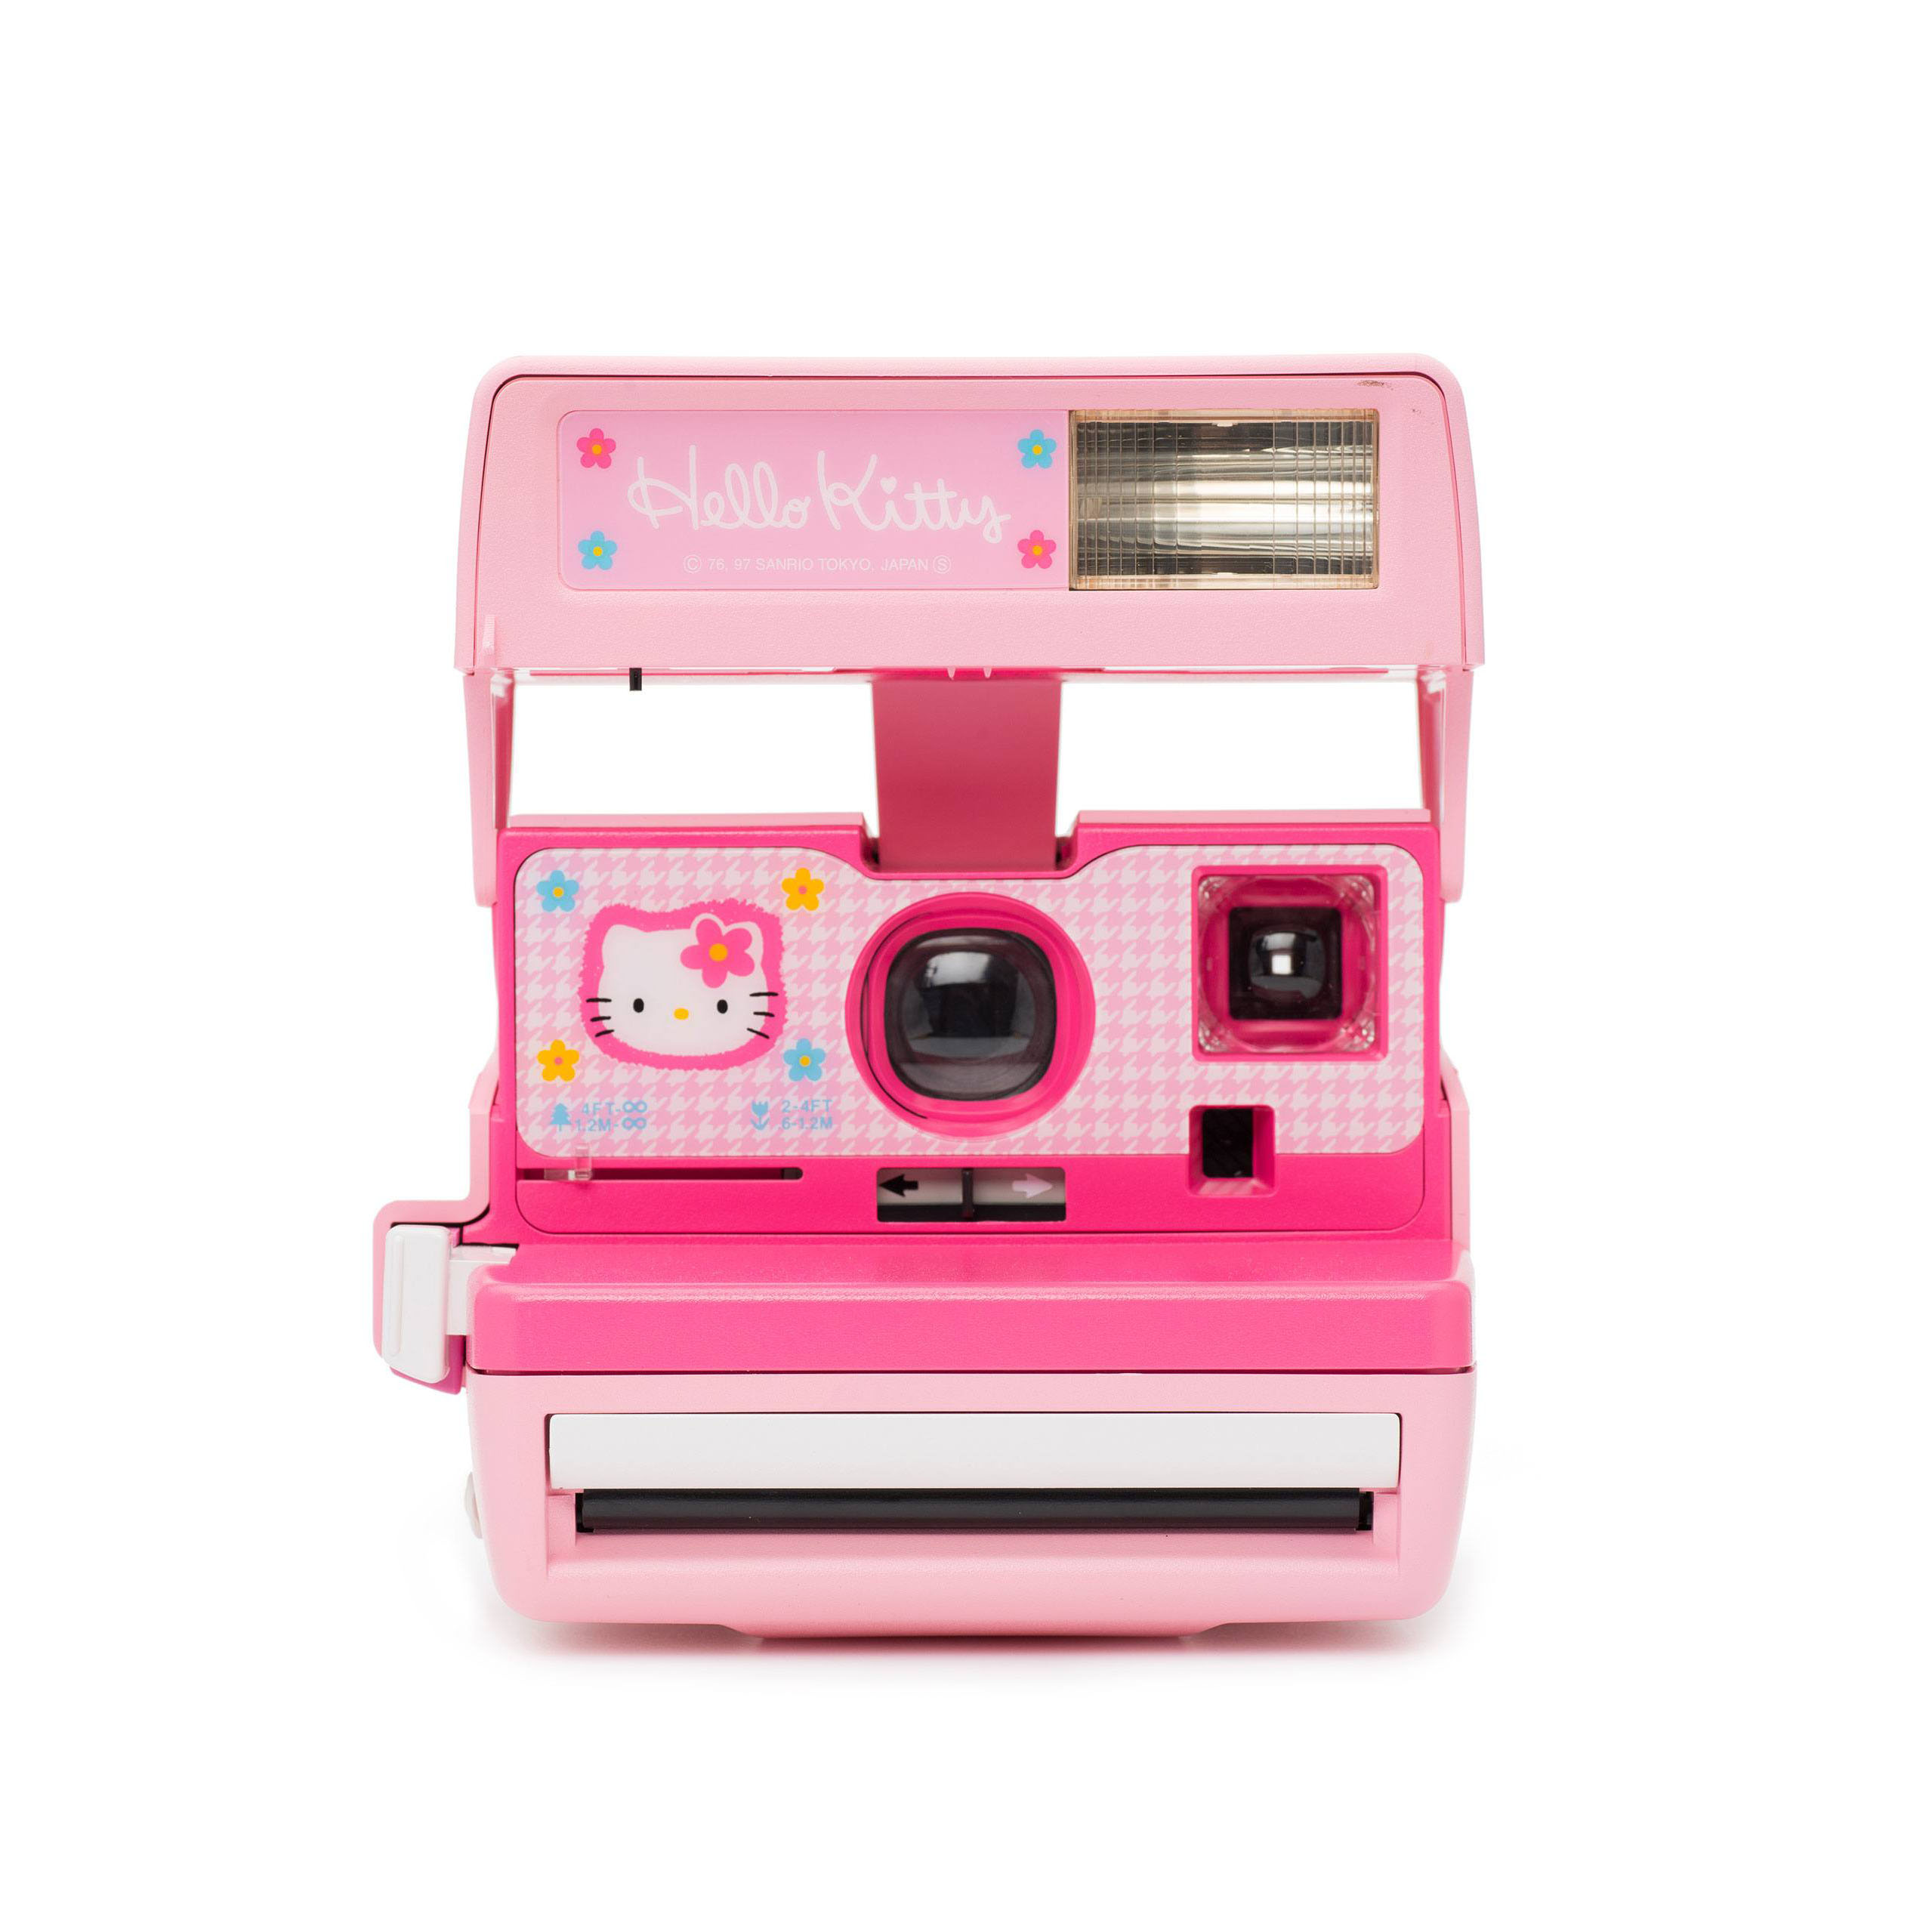 กล้องโพลารอยด์ 600 - Hello Kitty (Limited Edition from '90s)